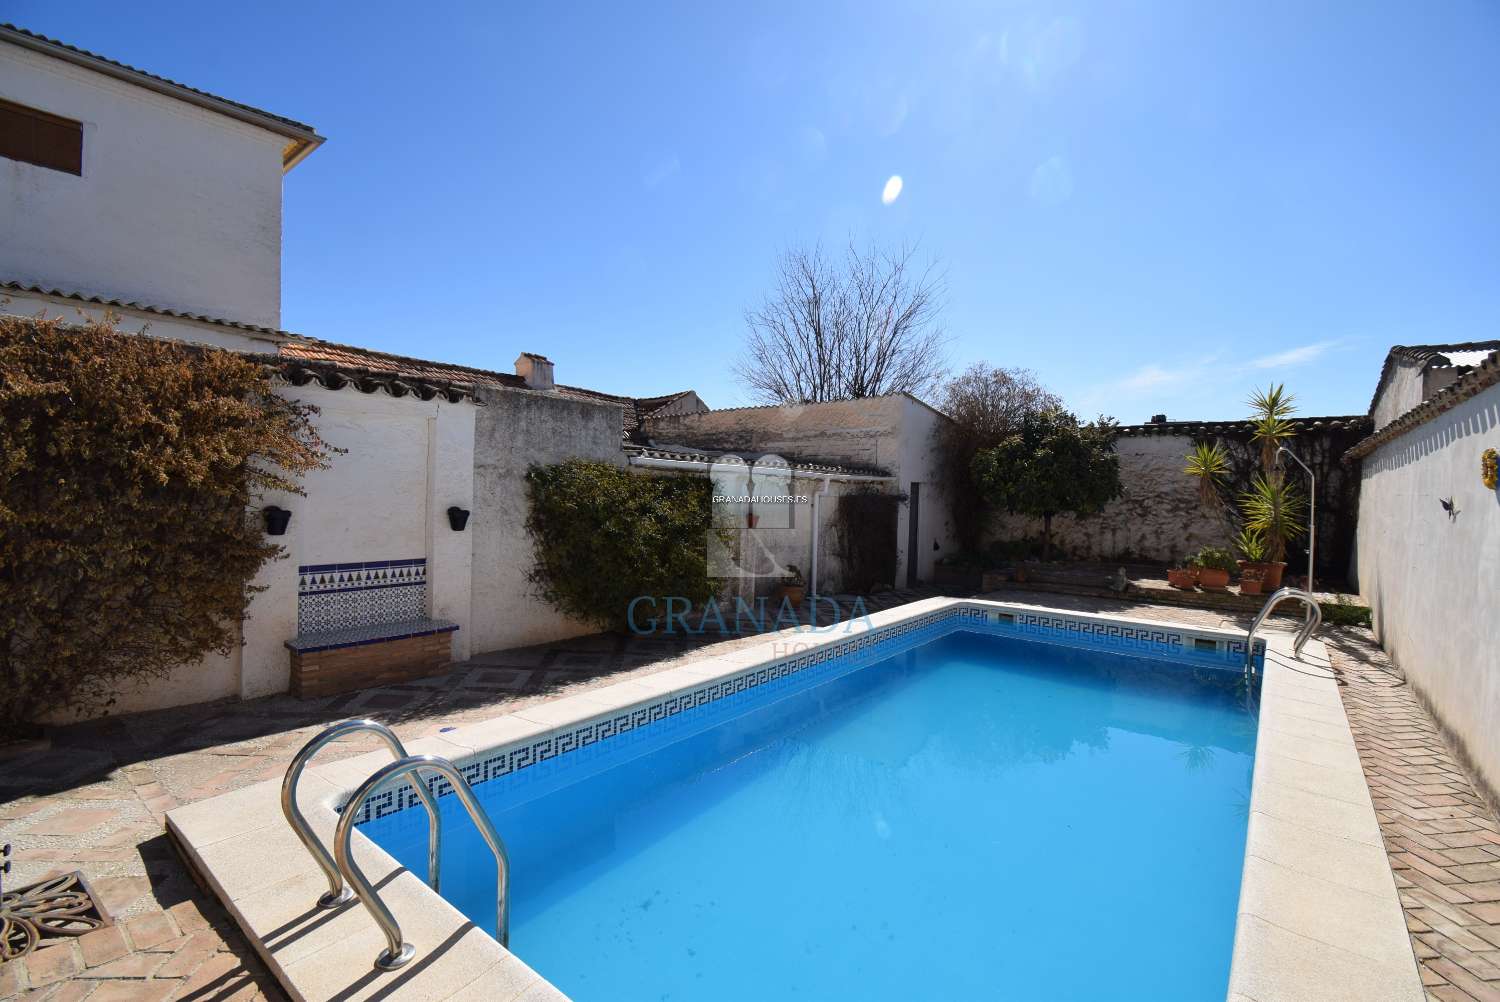 Smukt andalusisk hus med stor terrasse og pool